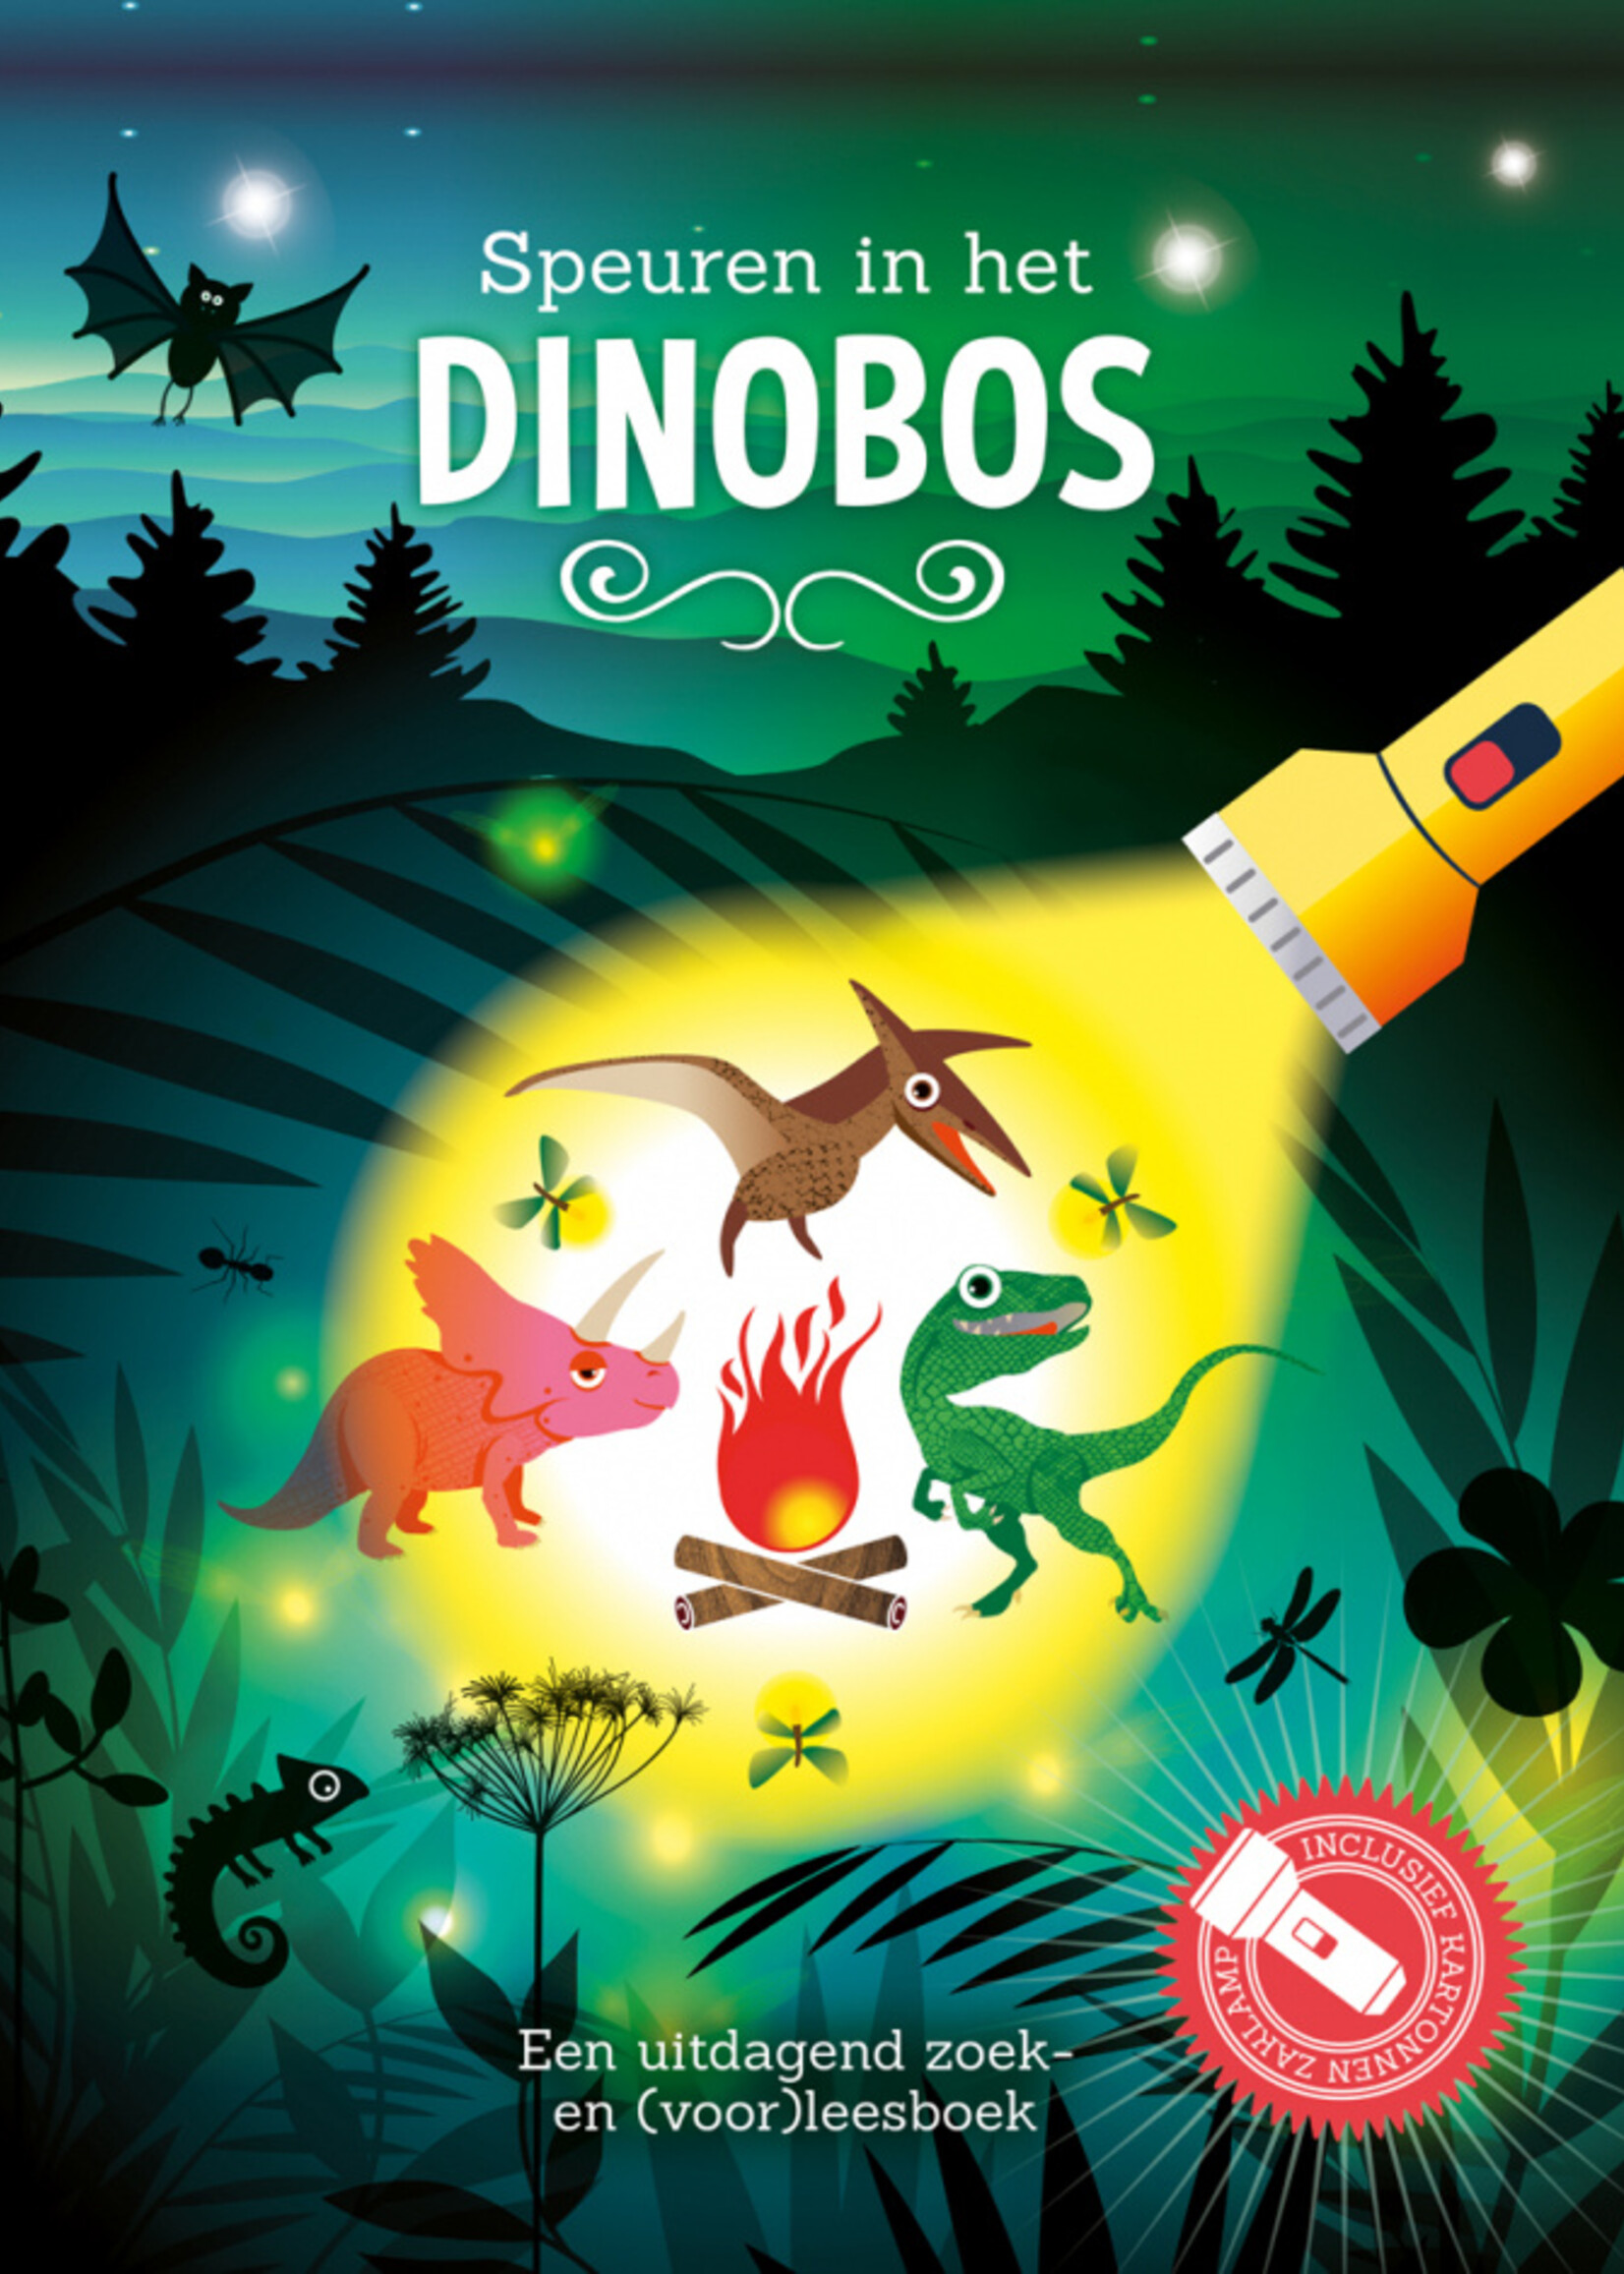 Zaklampboek | Speuren in het dinobos